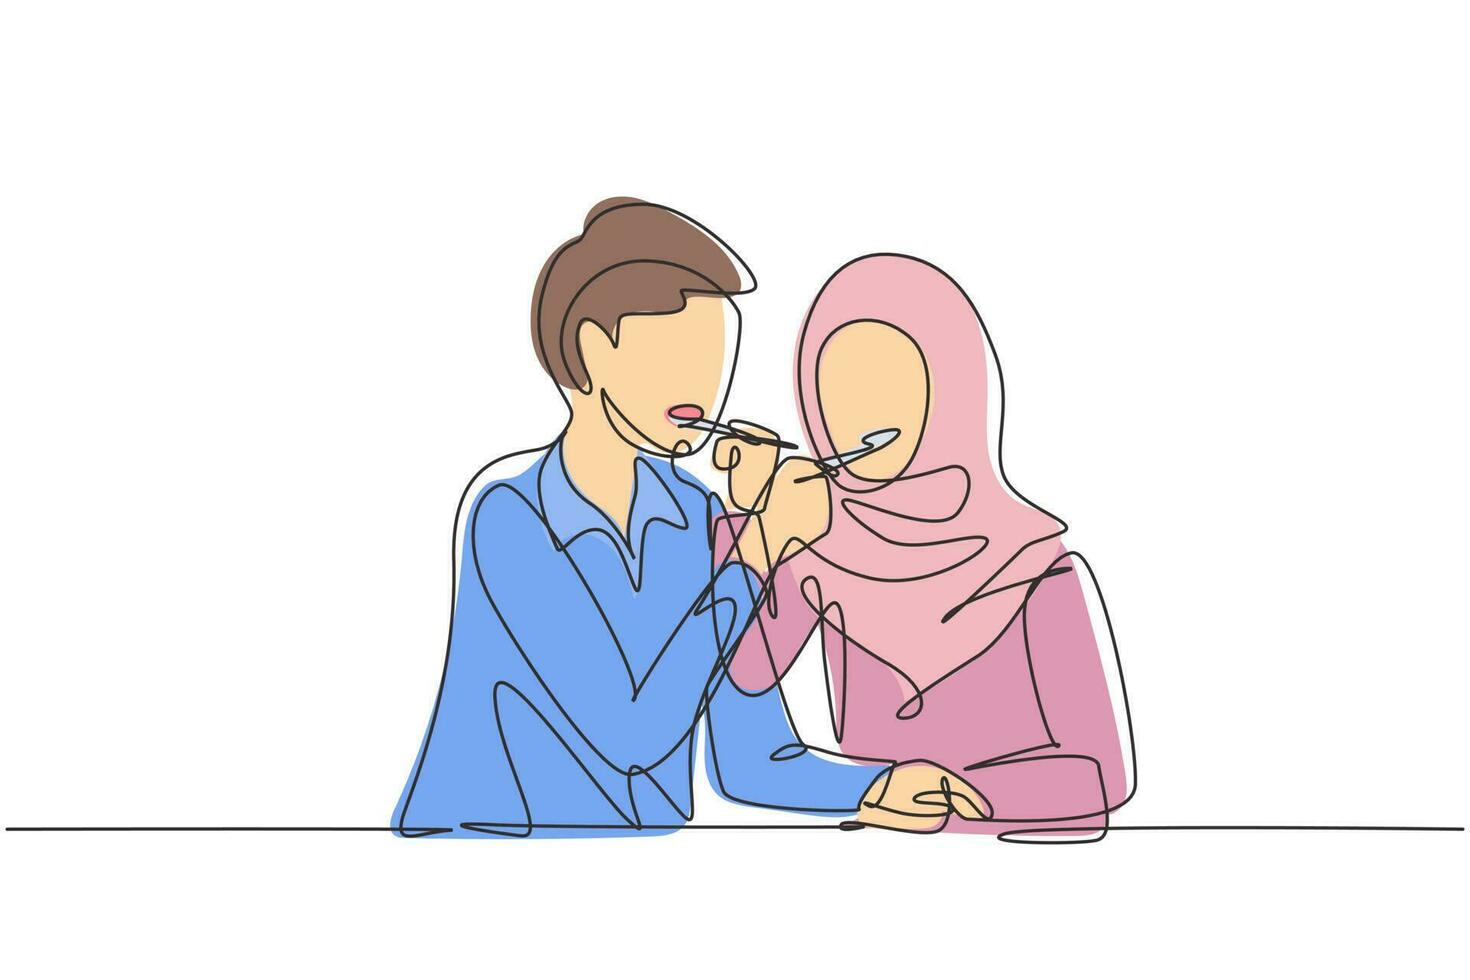 singola linea continua che disegna una coppia araba romantica che si nutre a vicenda. divertirsi cenando insieme al ristorante. celebrare anniversari di matrimonio. una linea disegnare grafica vettoriale illustrazione